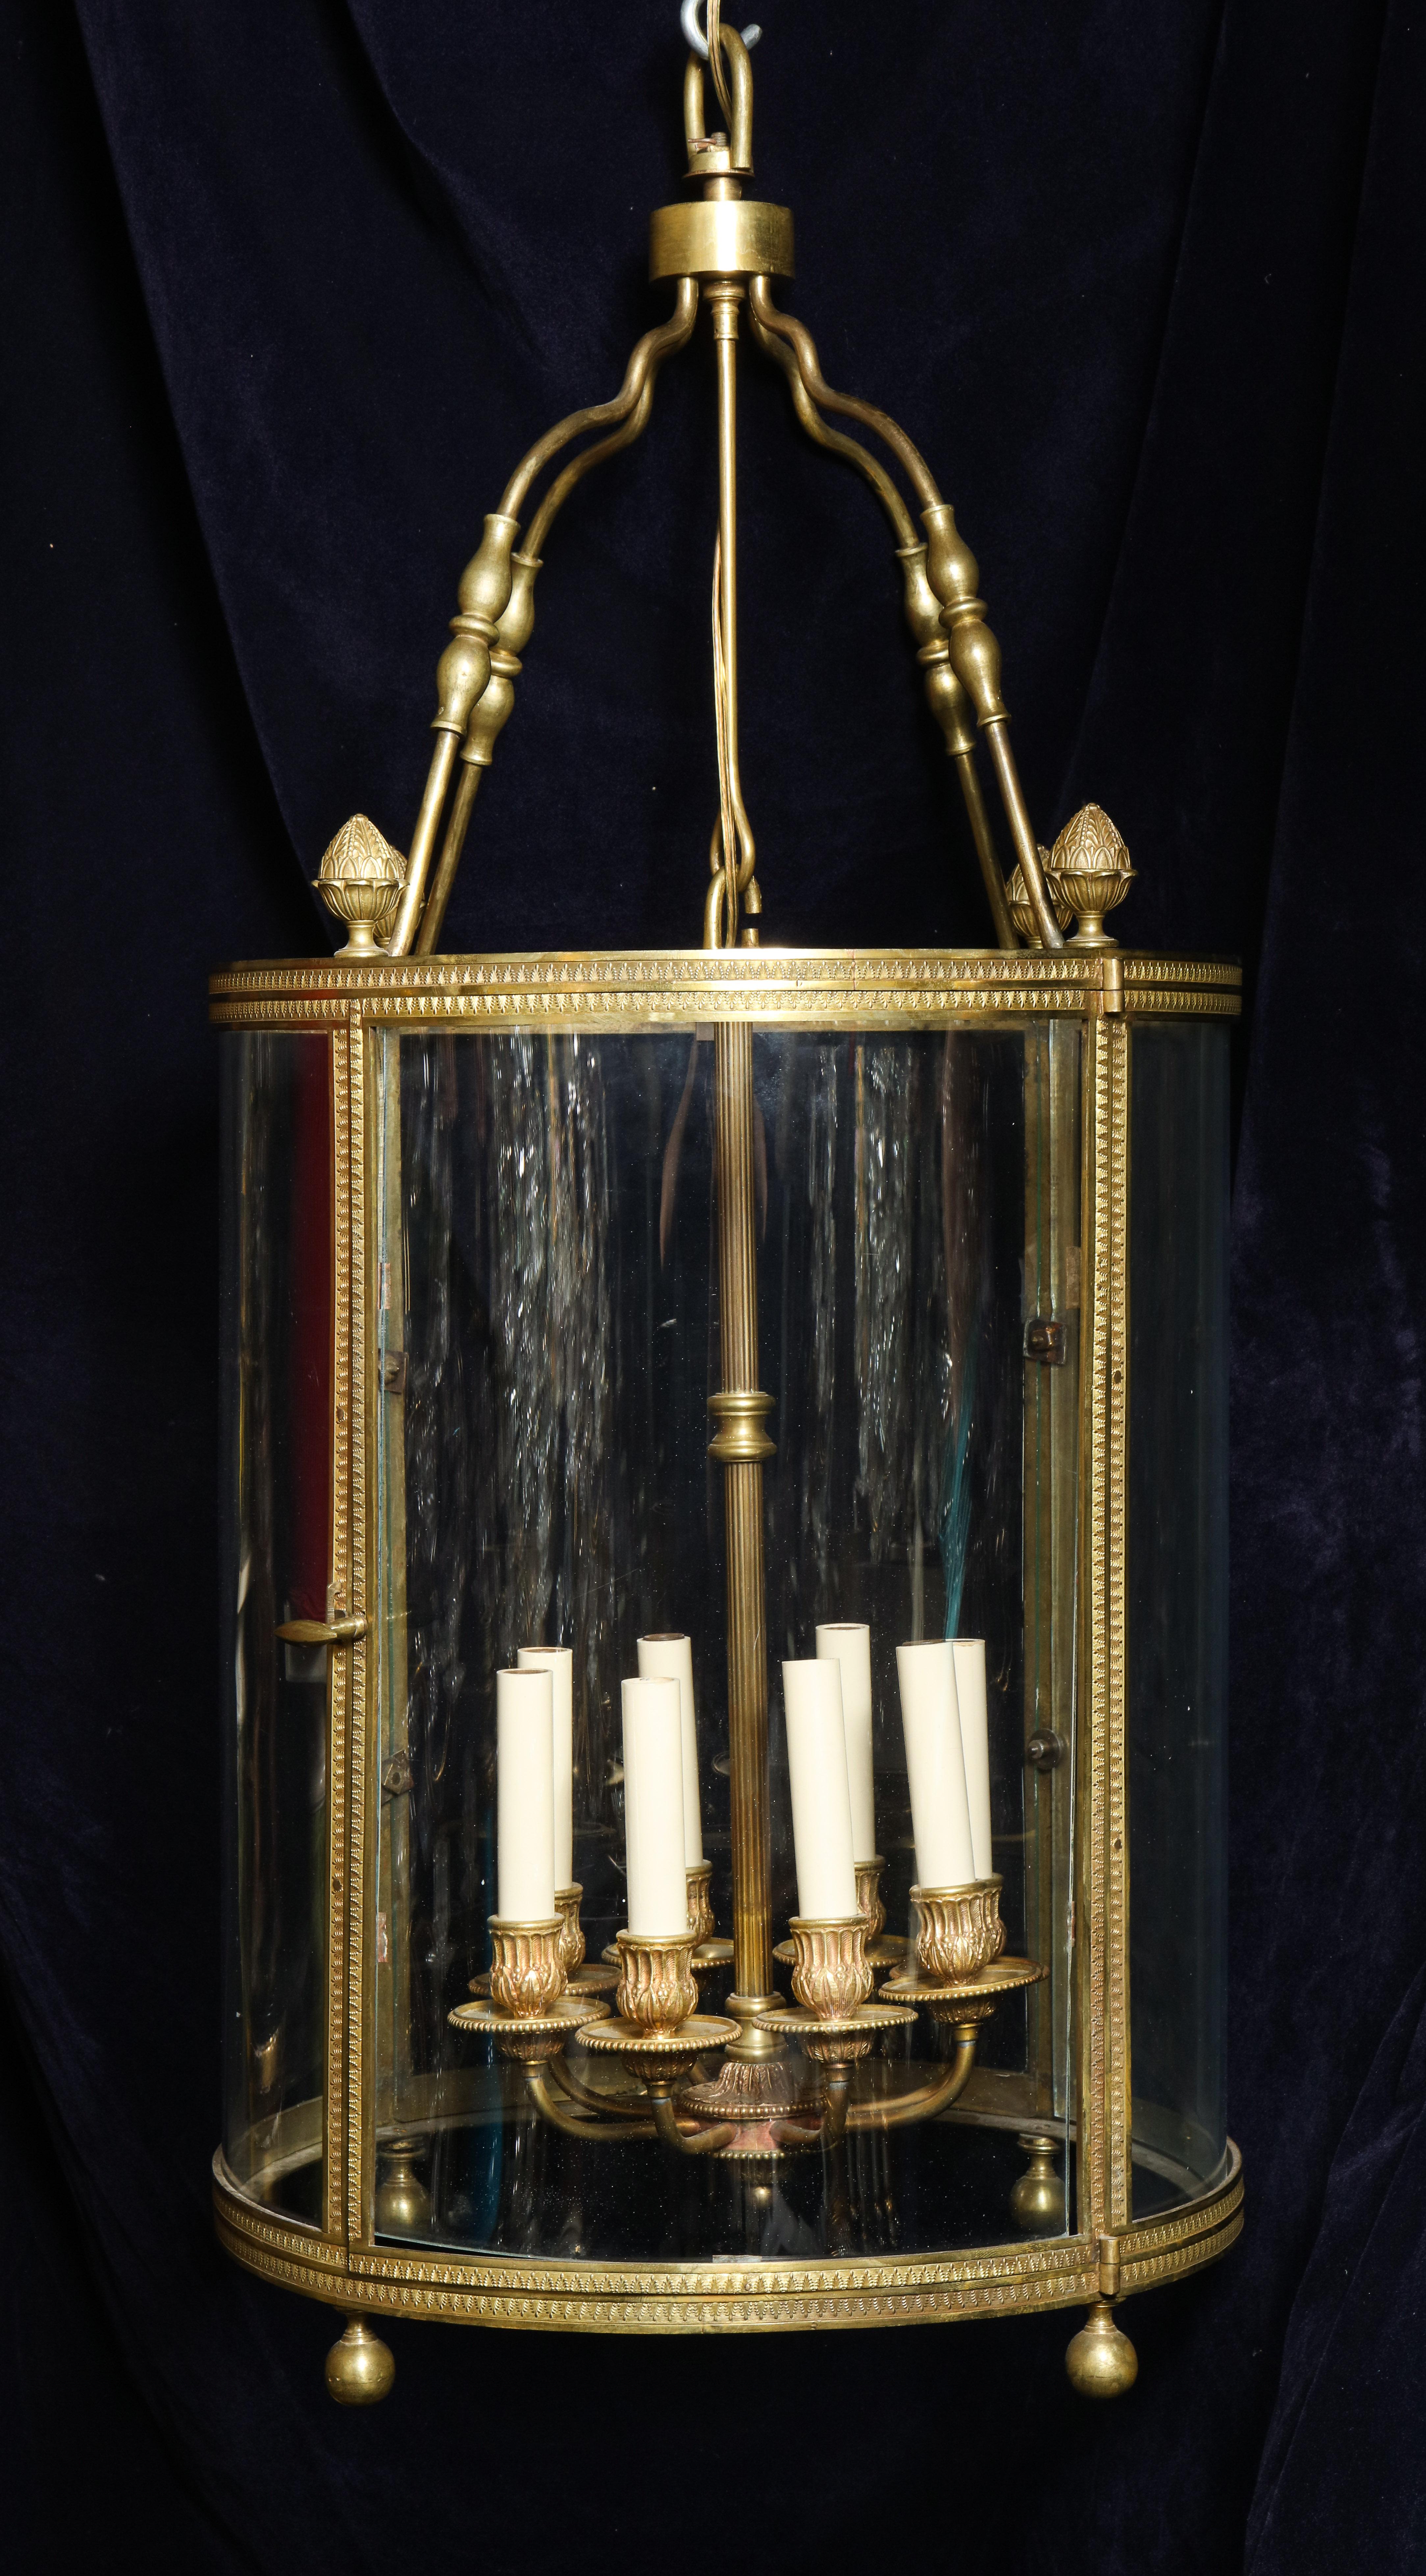 Une grande et exquise lanterne circulaire de style Louis XVI, en bronze doré et verre, de superbe qualité et détails, avec huit bras intérieurs en bronze doré.